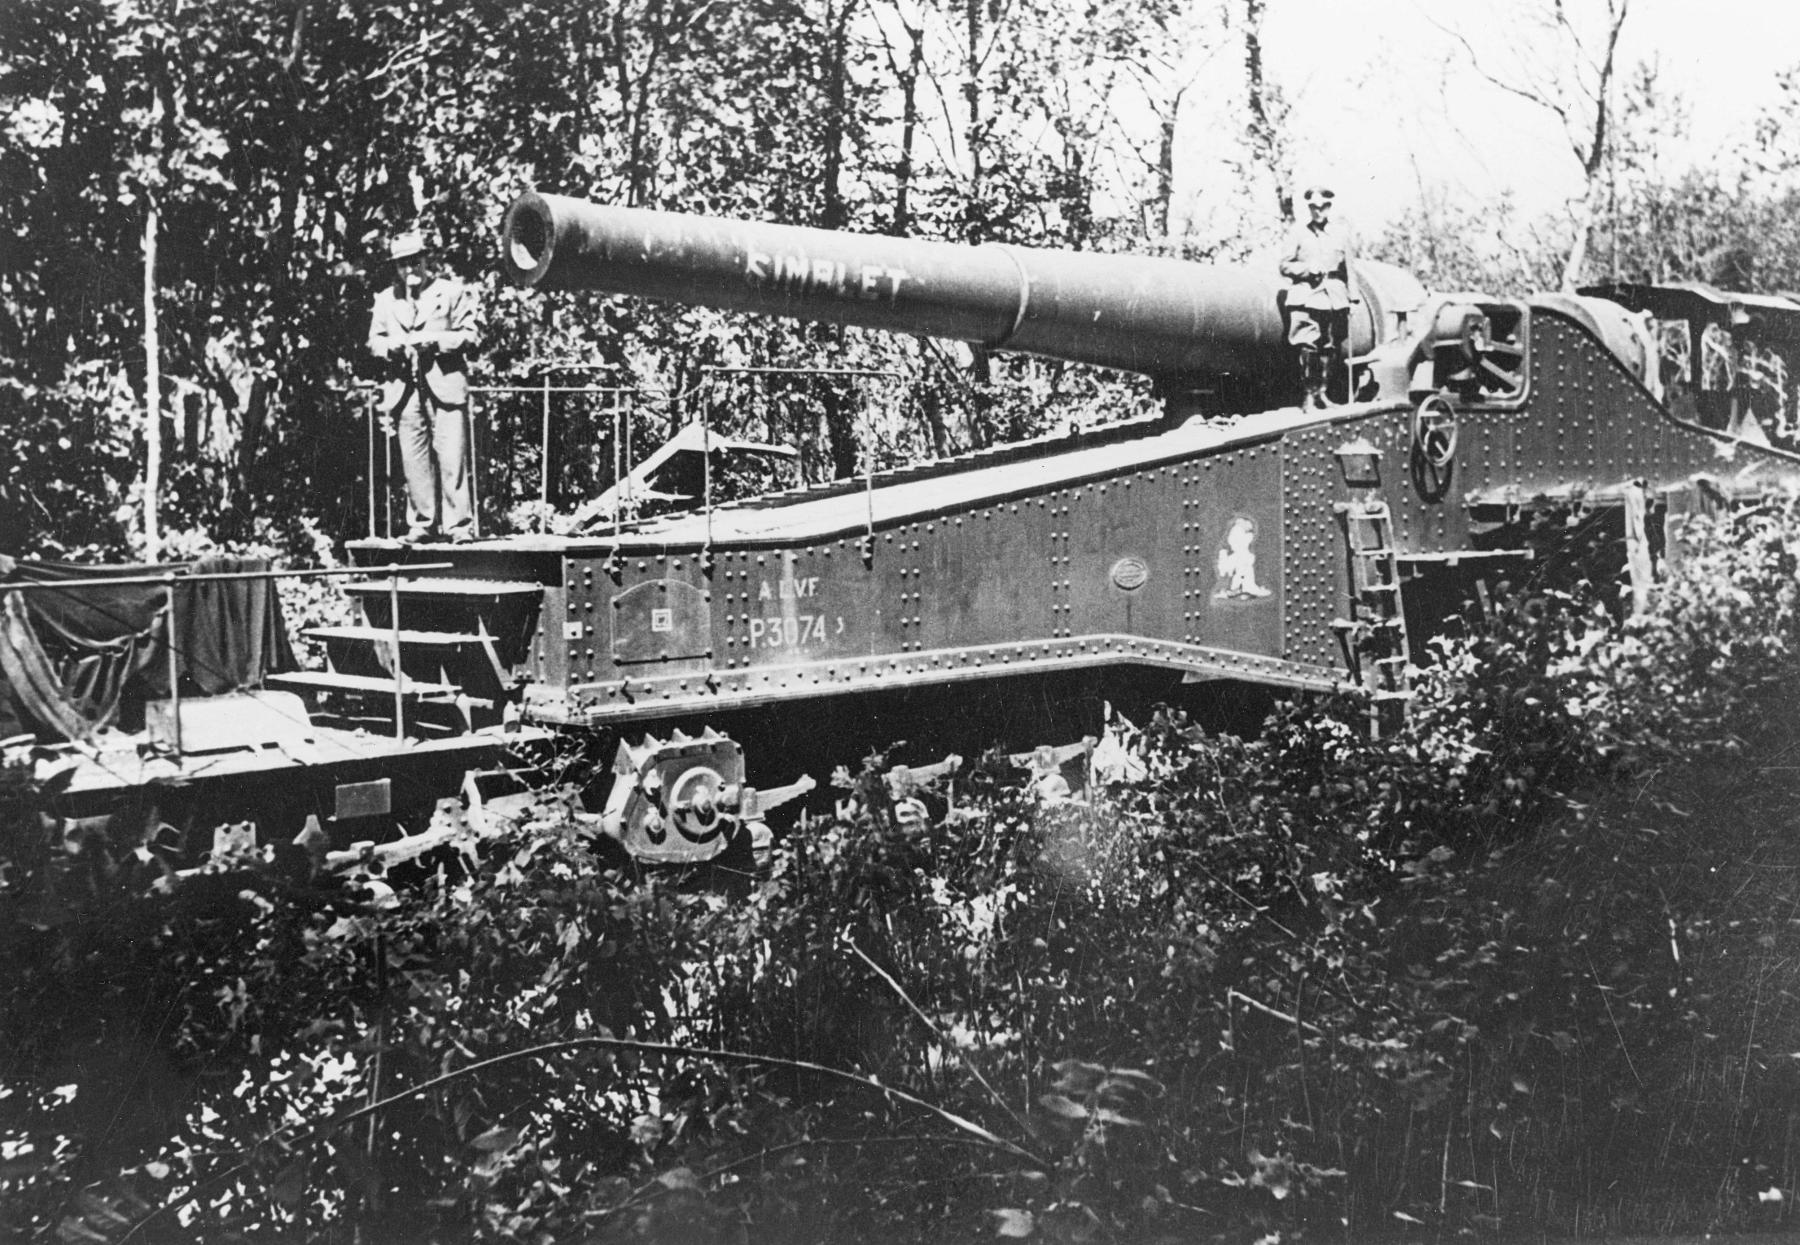 Ligne Maginot - 372° Régiment d'Artillerie Lourde sur Voie Ferrée (372° RALVF) - Pièce  de 320 Mle 1917 G  (P 3074 - Simplet)  appartenant à la 4° batterie du 372°  RALVF lors de sa saisie par les allemands
